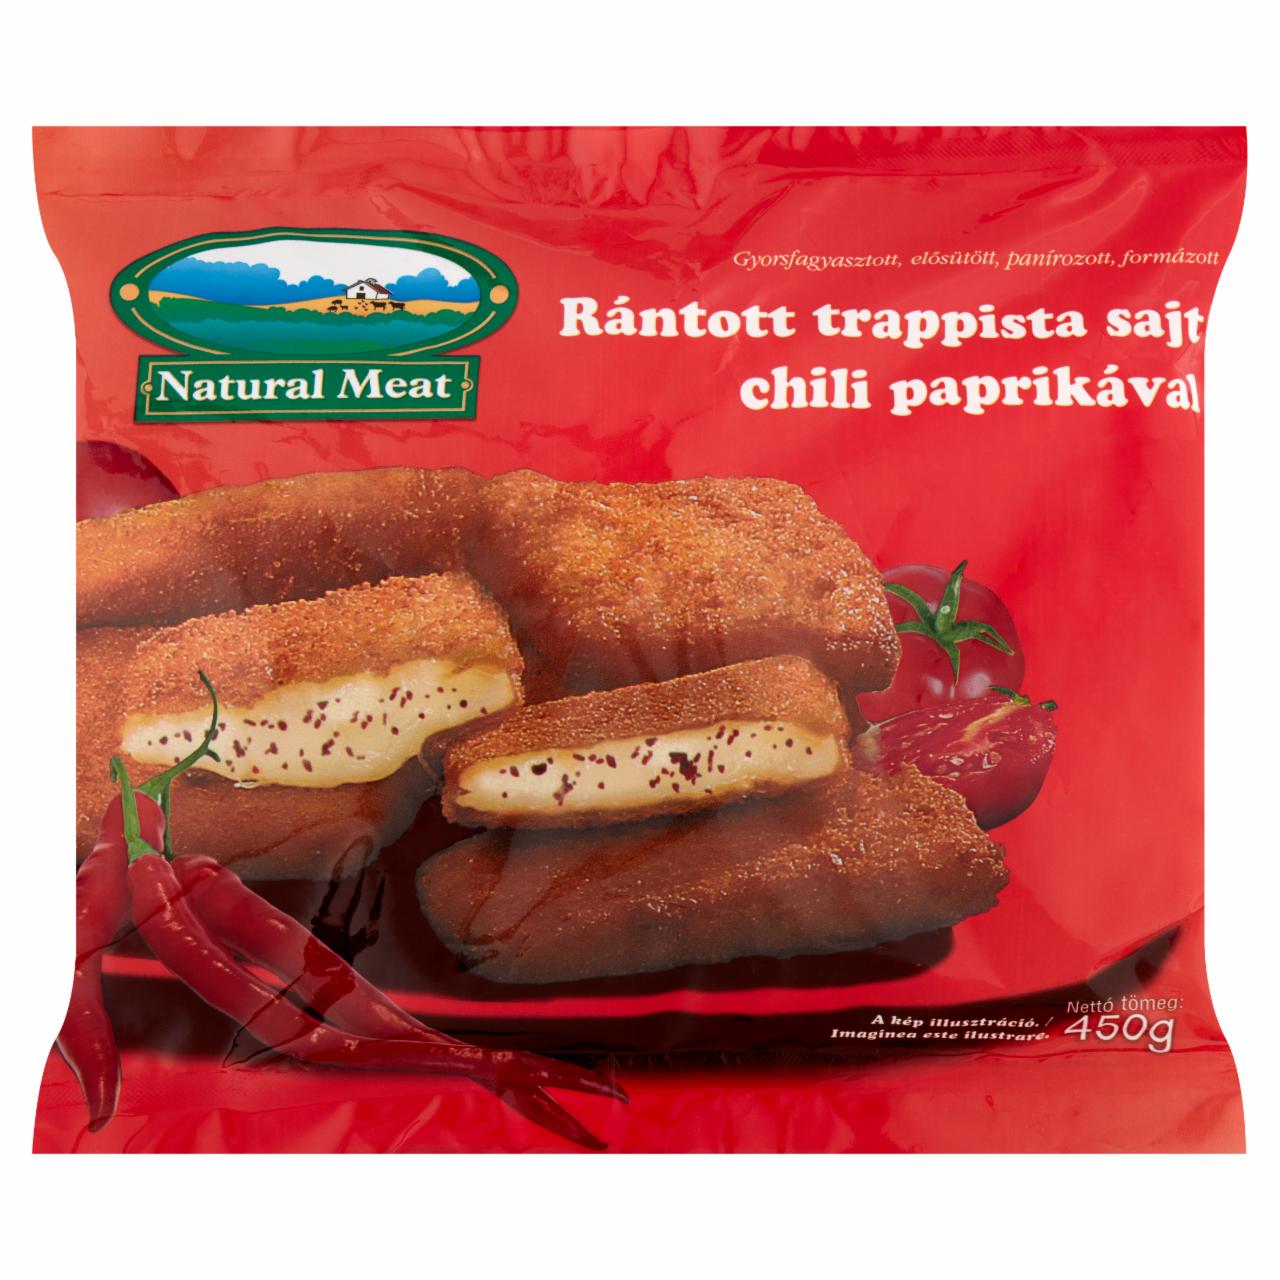 Képek - Natural Meat gyorsfagyasztott rántott trappista sajt chili paprikával 450 g